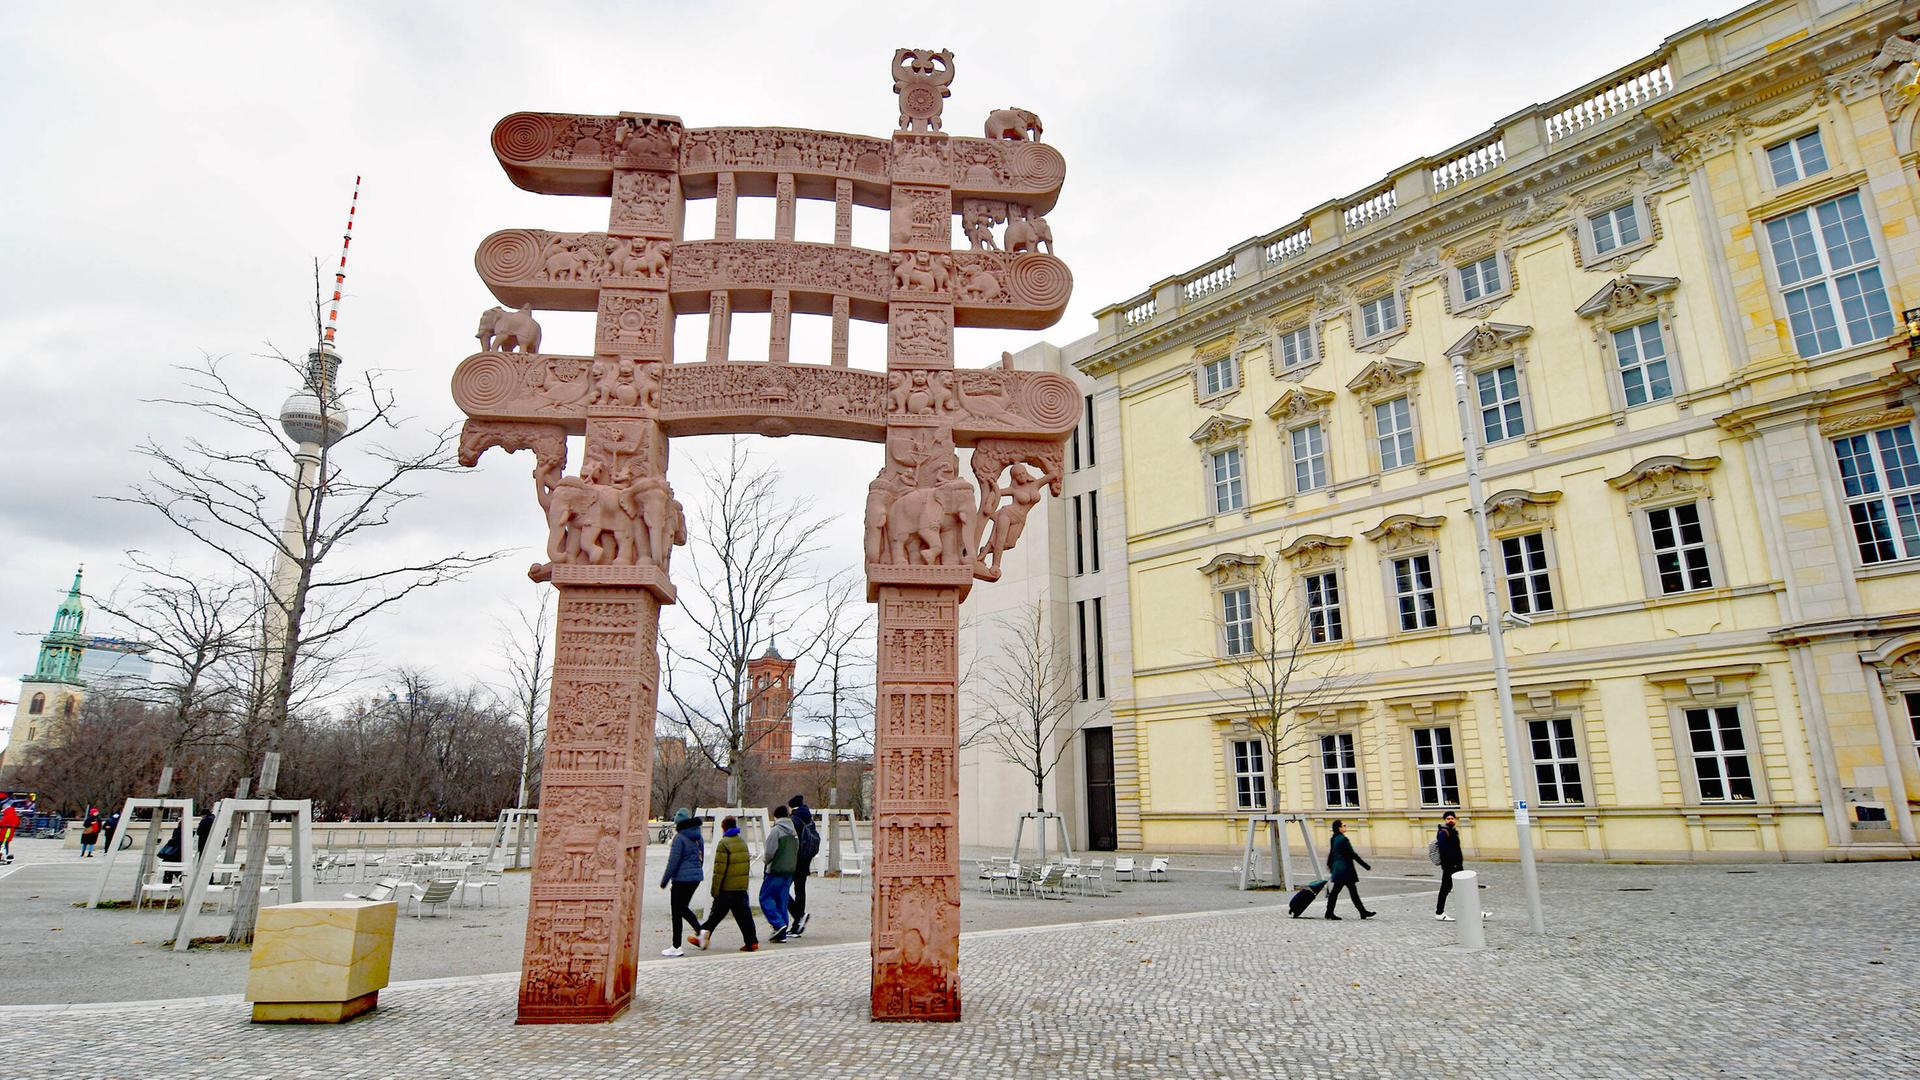 Das Sanchi-Tor als Sandsteinkopie neben Humboldt Forum in Berlin